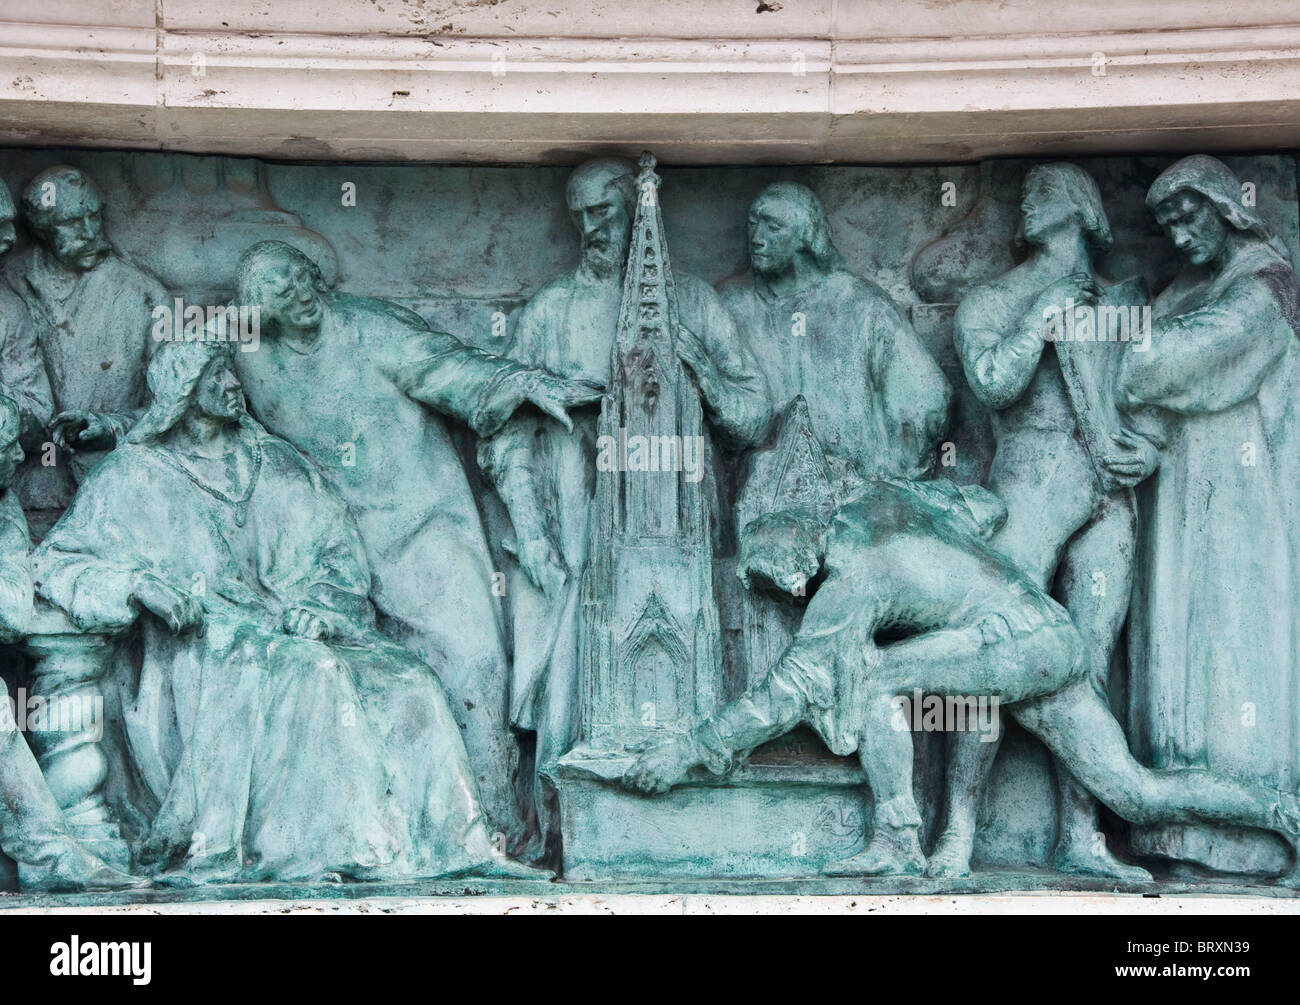 Nahaufnahme von Bronzerelief im UNESCO-Weltkulturerbe Heroes Square Budapest Ungarn Europa Stockfoto